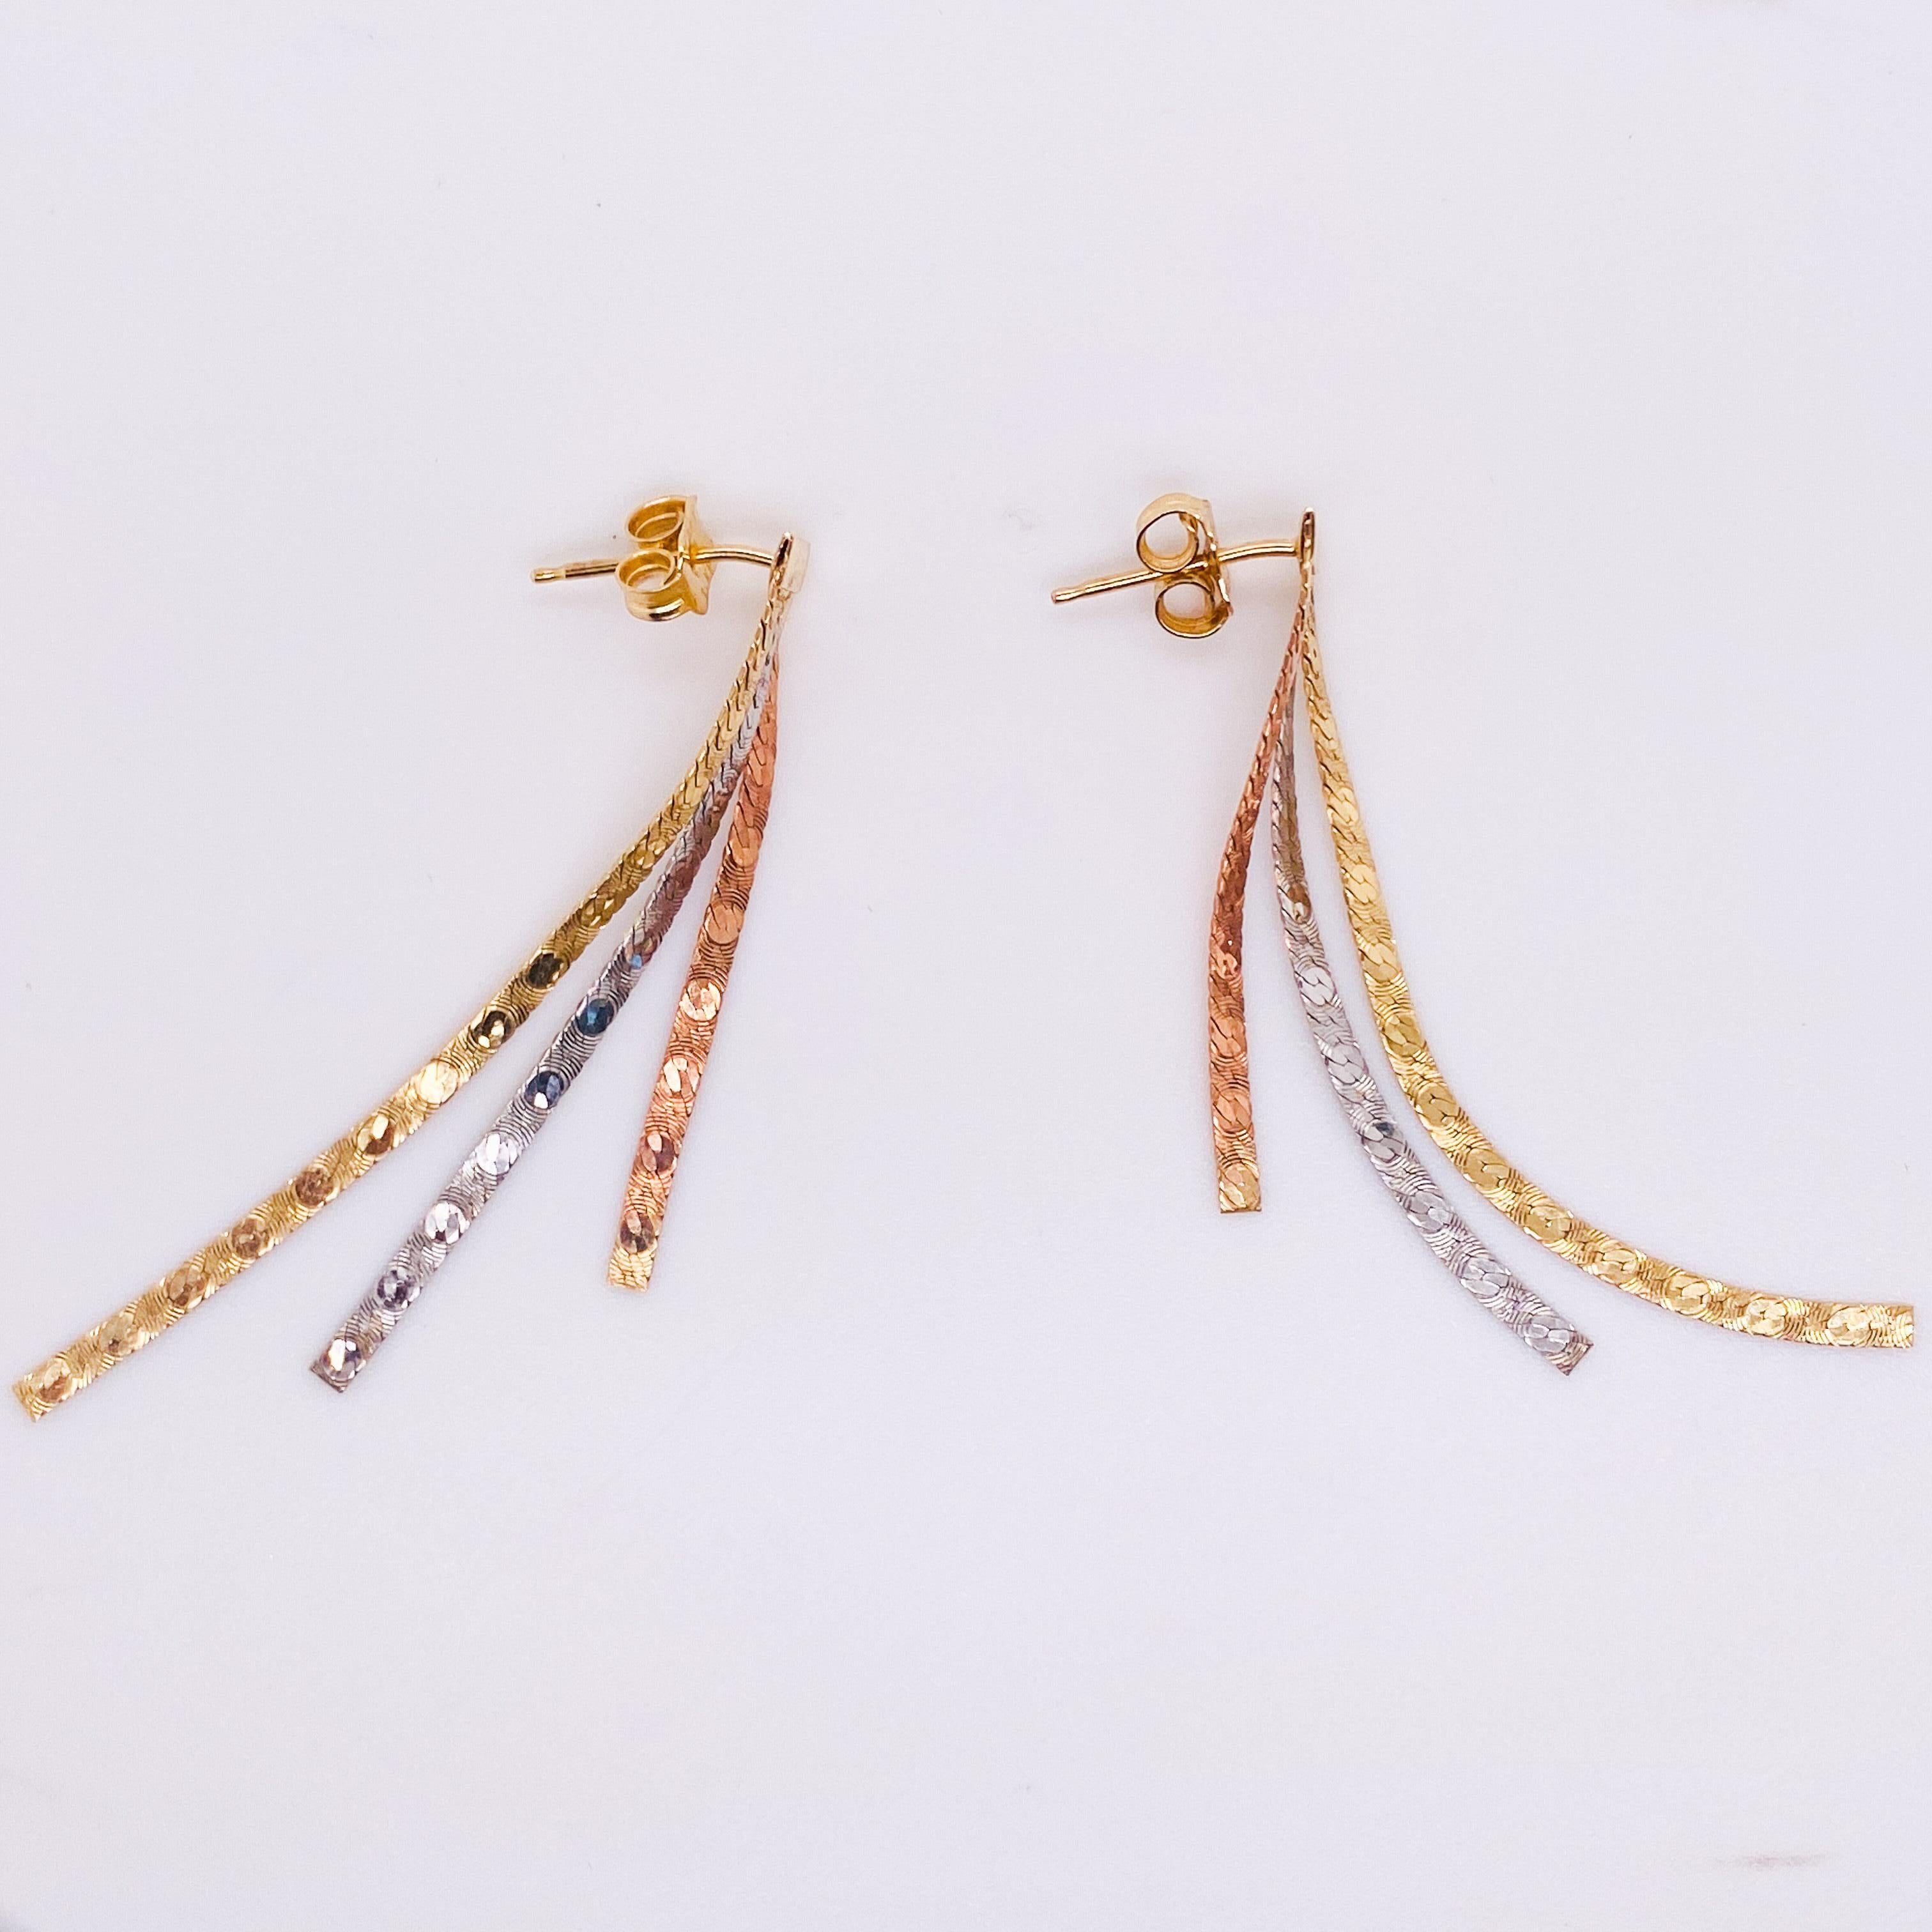 Ces boucles d'oreilles astucieuses en métal mélangé sont parfaites pour toutes les occasions ! Ils ont été fabriqués en Italie à partir d'une combinaison de chaînes à chevrons en or jaune 14 carats, en or blanc et en or rose. Les boucles d'oreilles